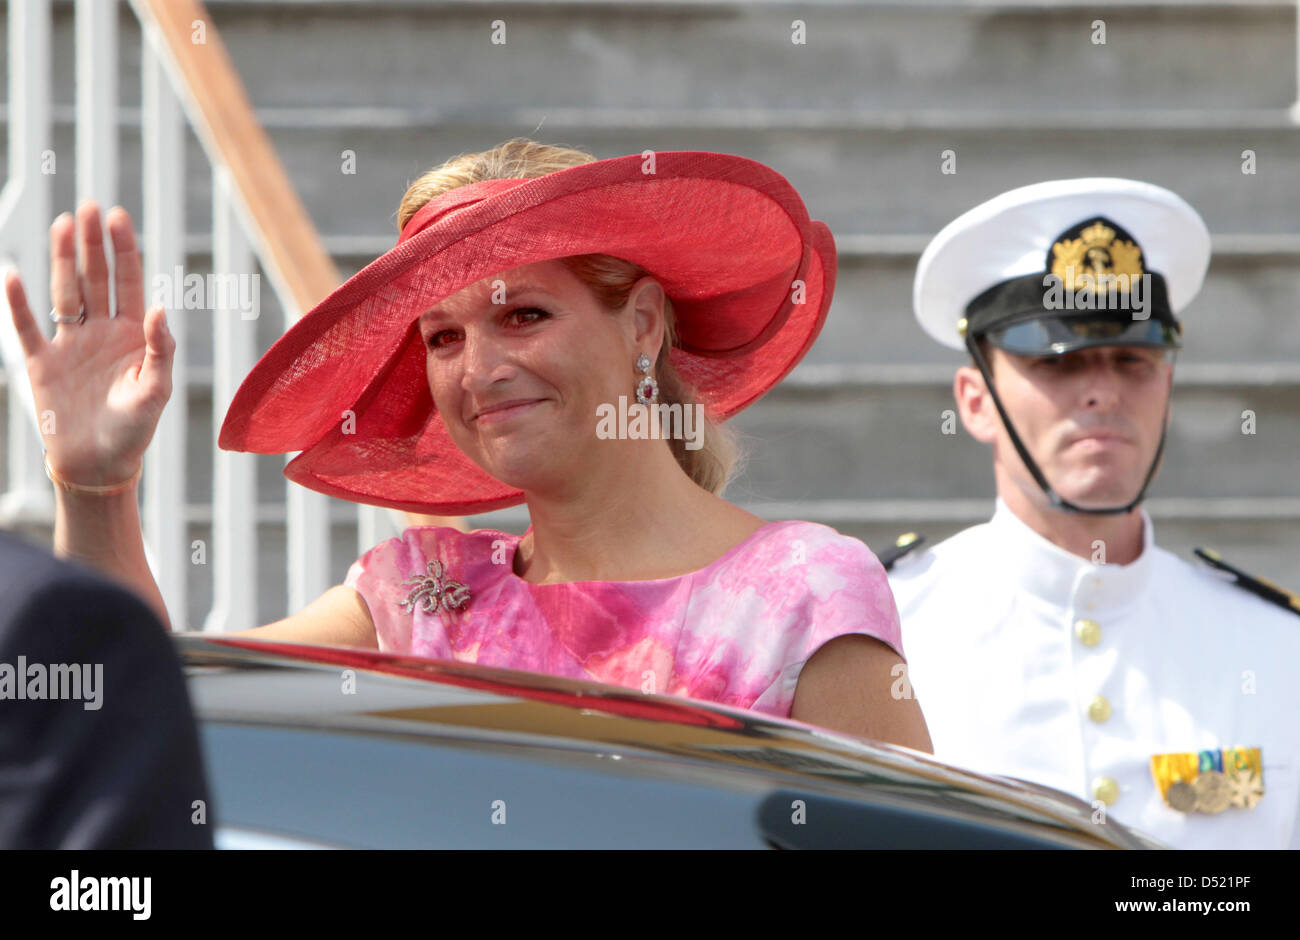 La princesse maxima des Pays-Bas arrive à le gouvernement à Willemstad, Curaçao, 09 octobre 2010. Le couple royal est à Willemstad en raison de la modification du statut juridique des cinq îles des Caraïbes qui composent les Antilles néerlandaises à partir du 10 octobre. Photo : Albert Nieboer / Pays-Bas OUT Banque D'Images